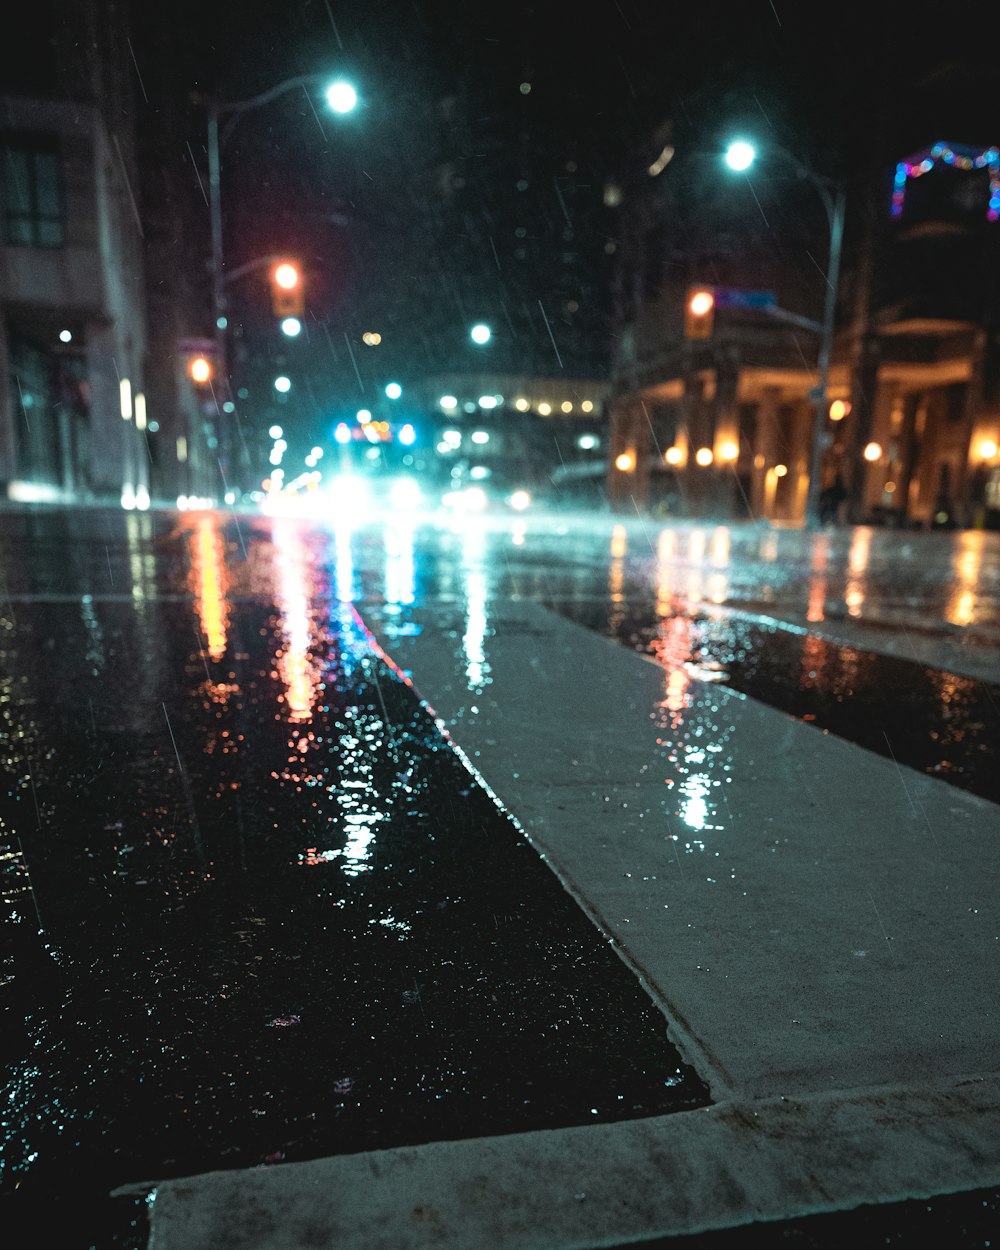 Carretera de asfalto negro con coches durante la noche